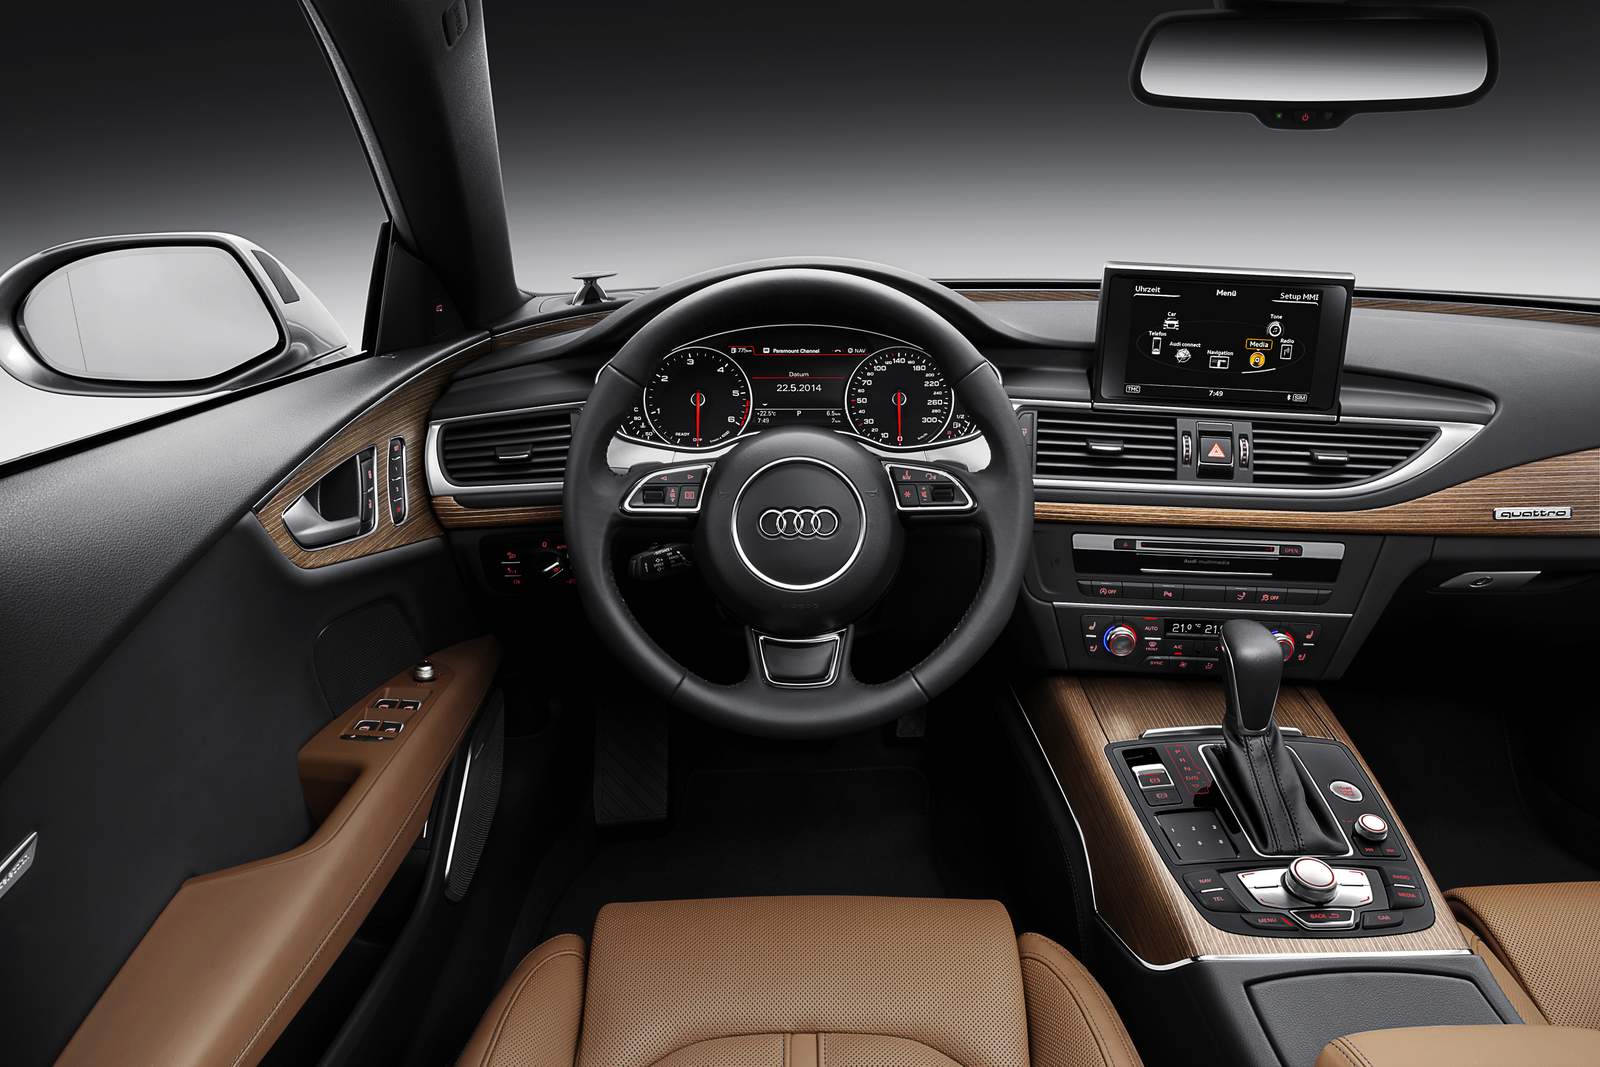 Audi A7 tabela fipe